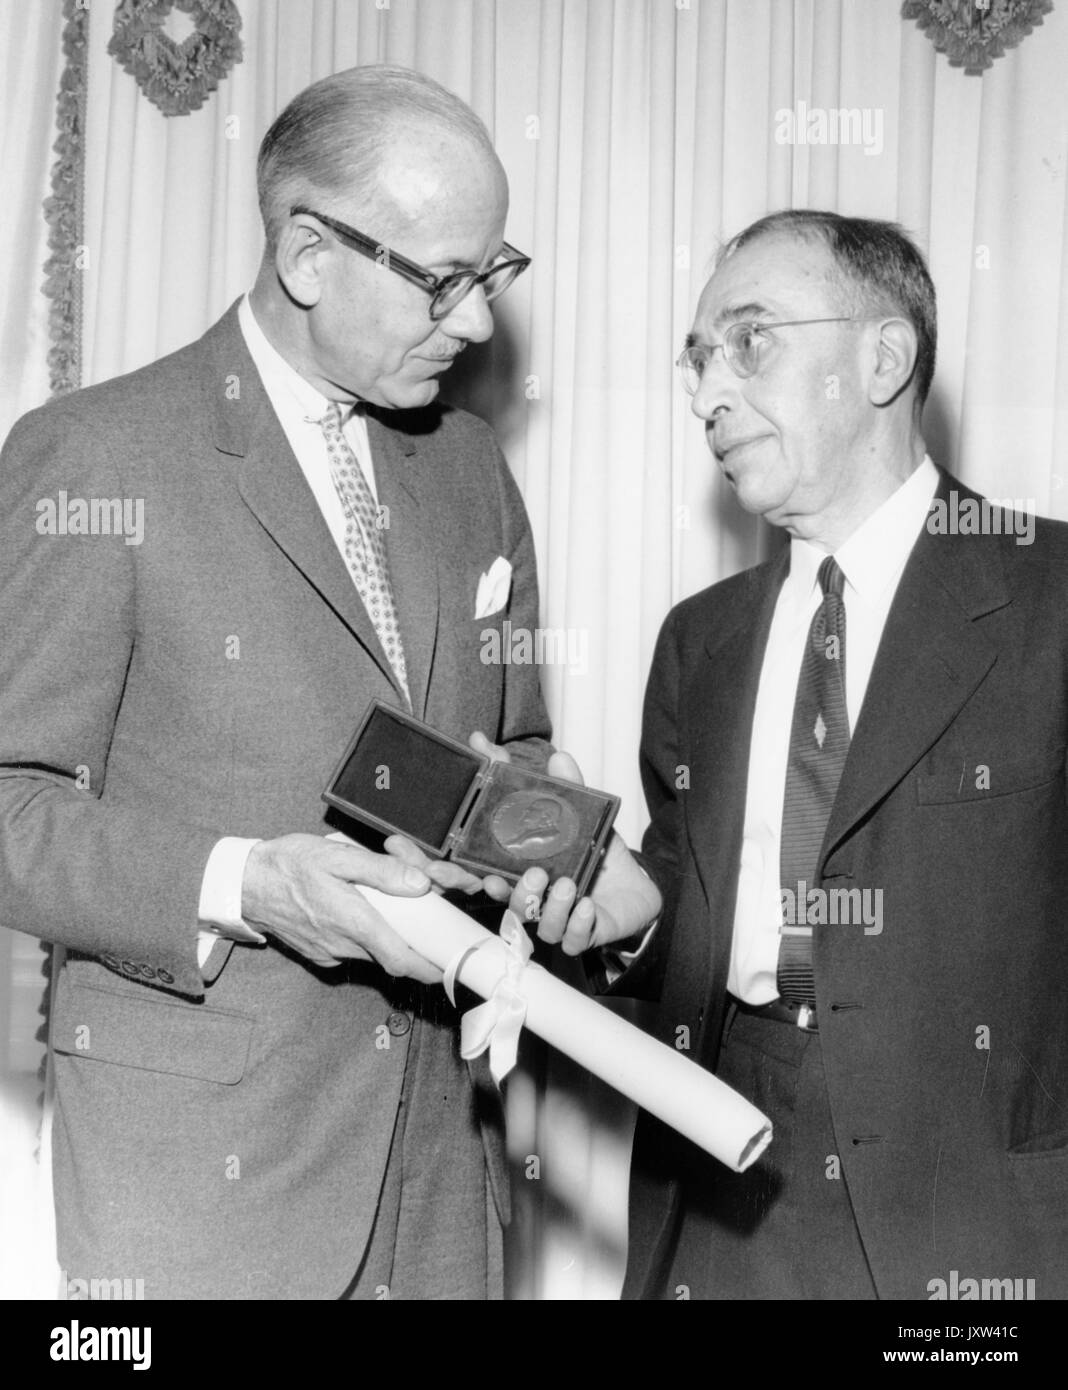 Gregory breit, Candida fotografia, breit, sulla destra, di ricevere un premio da uomo non identificato, c 60 anni di età, 1950. Foto Stock